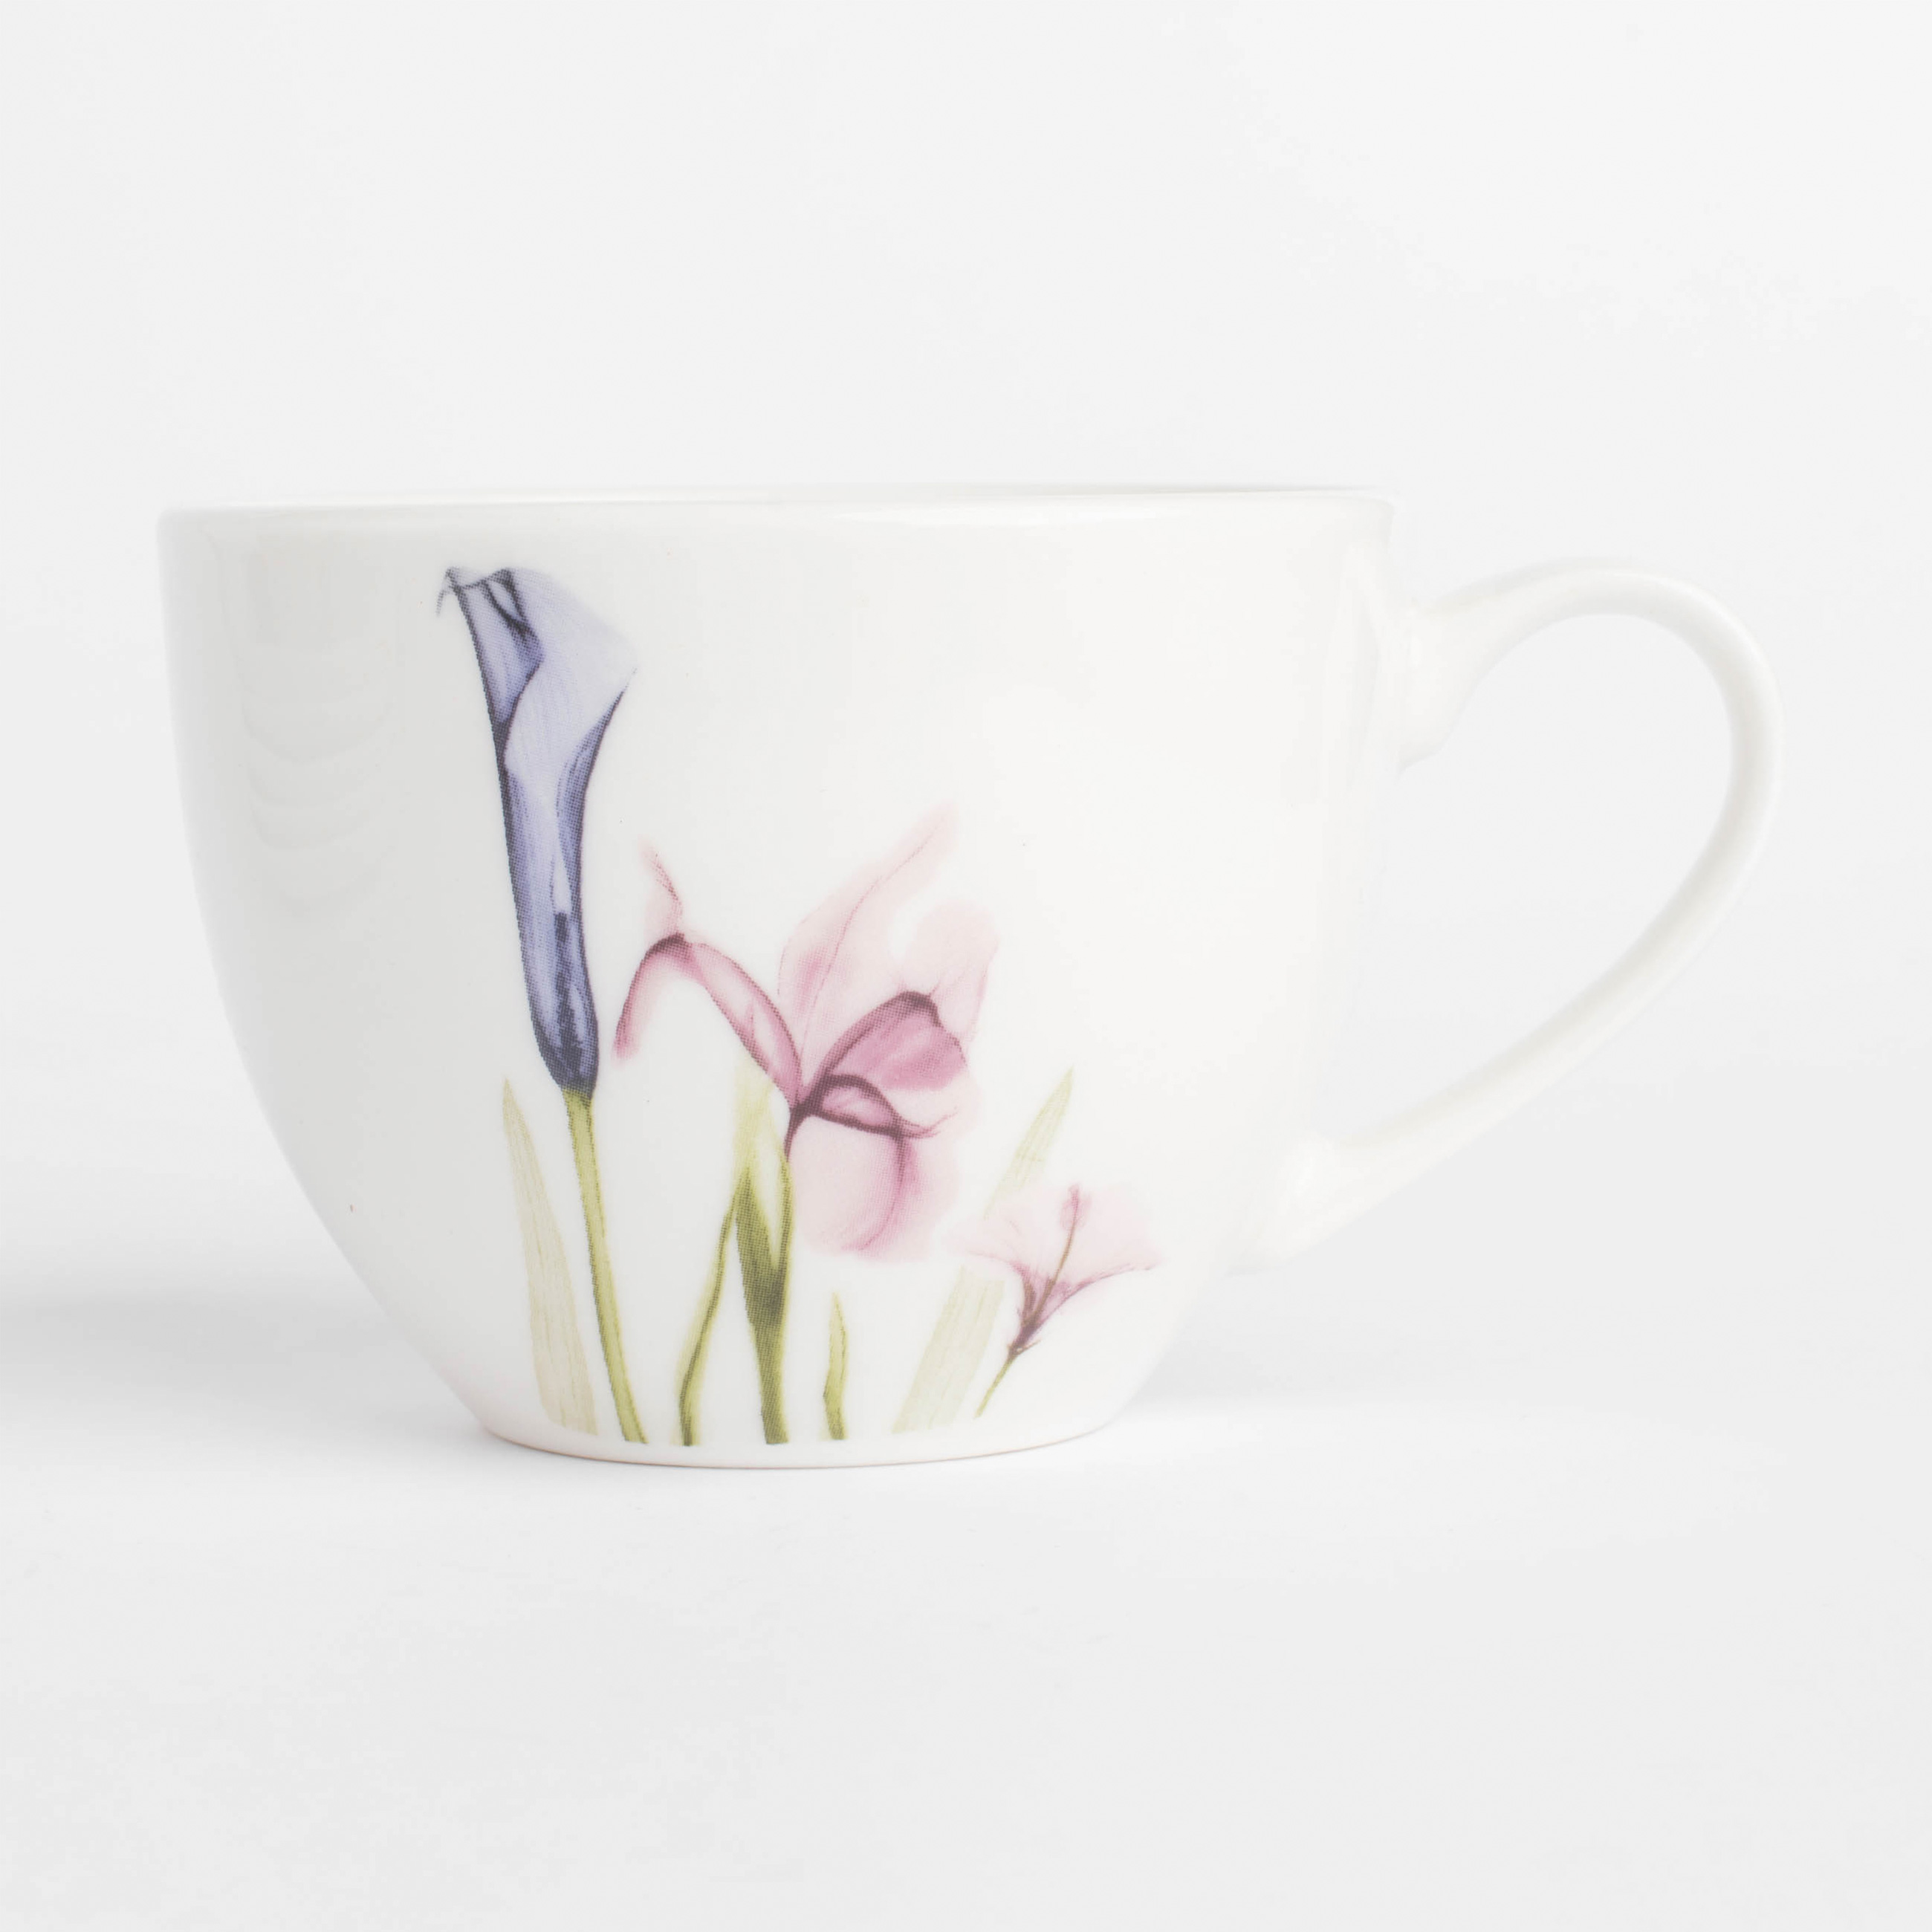 Пара чайная, 6 перс, 12 пр, 220 мл, фарфор N, белая, Пастельные цветы, Pastel flowers